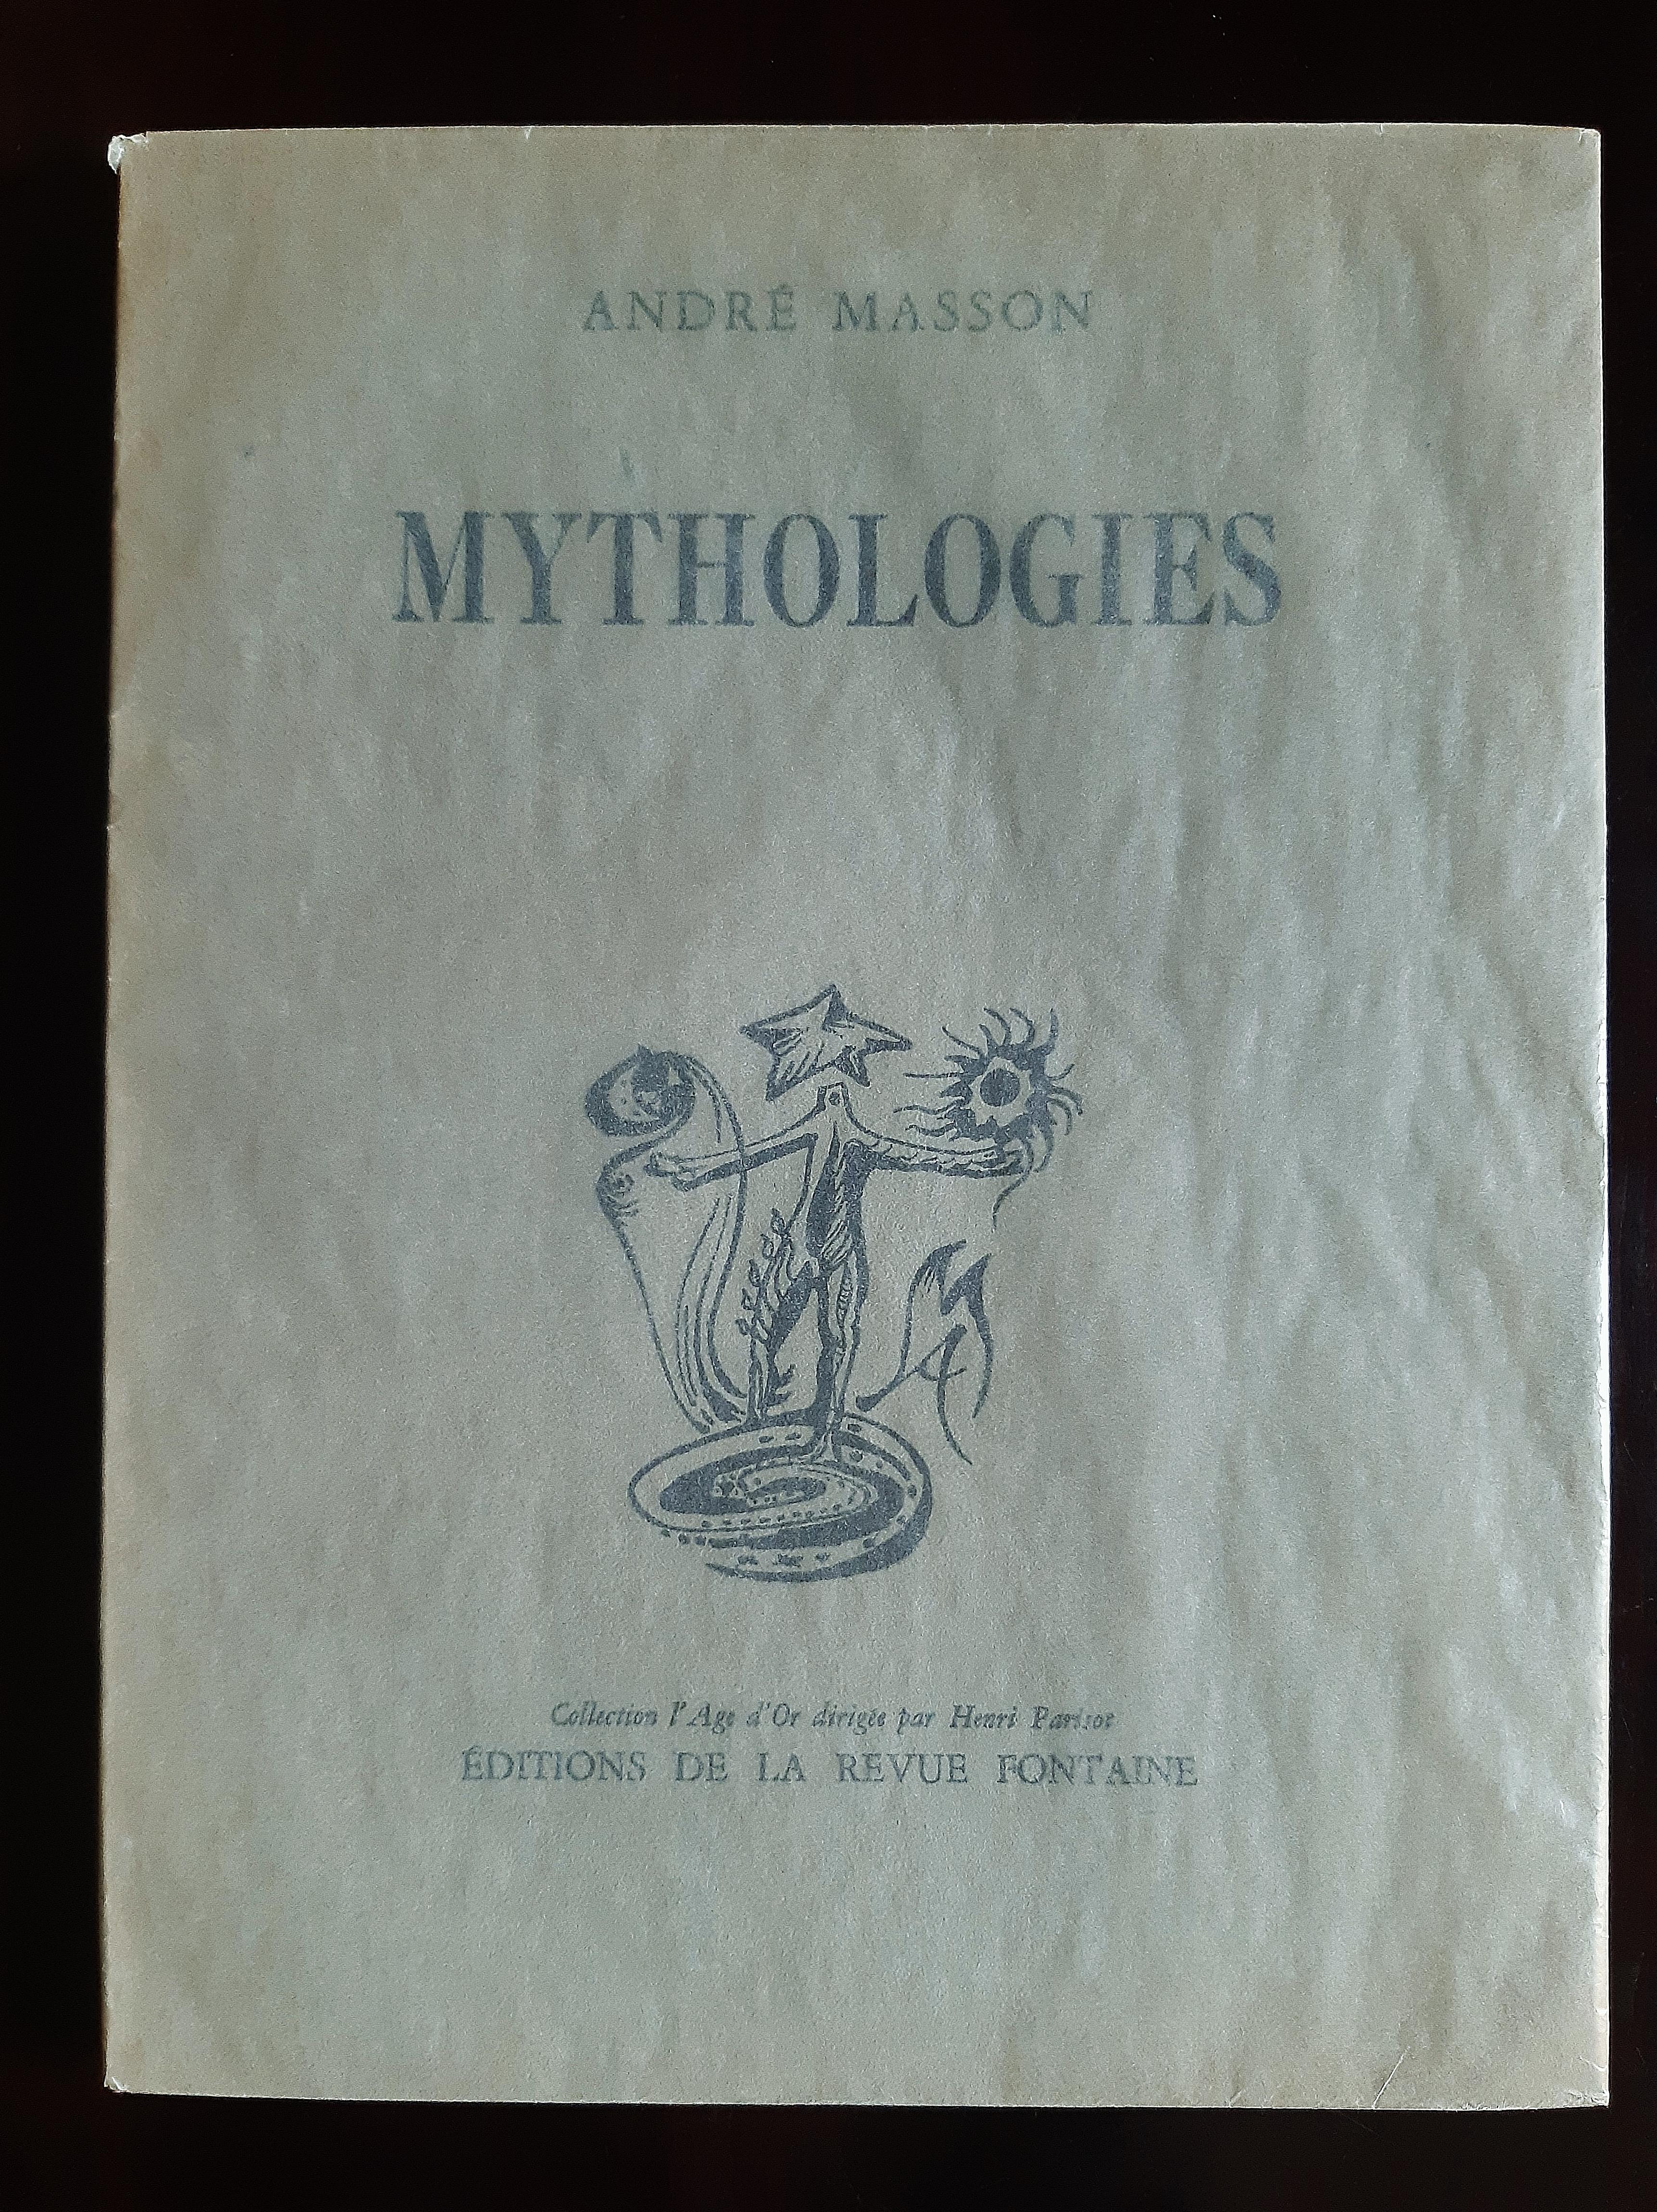 Mythologies - Livre rare illustré par Andr Masson - 1946 - Surréalisme Art par André Masson